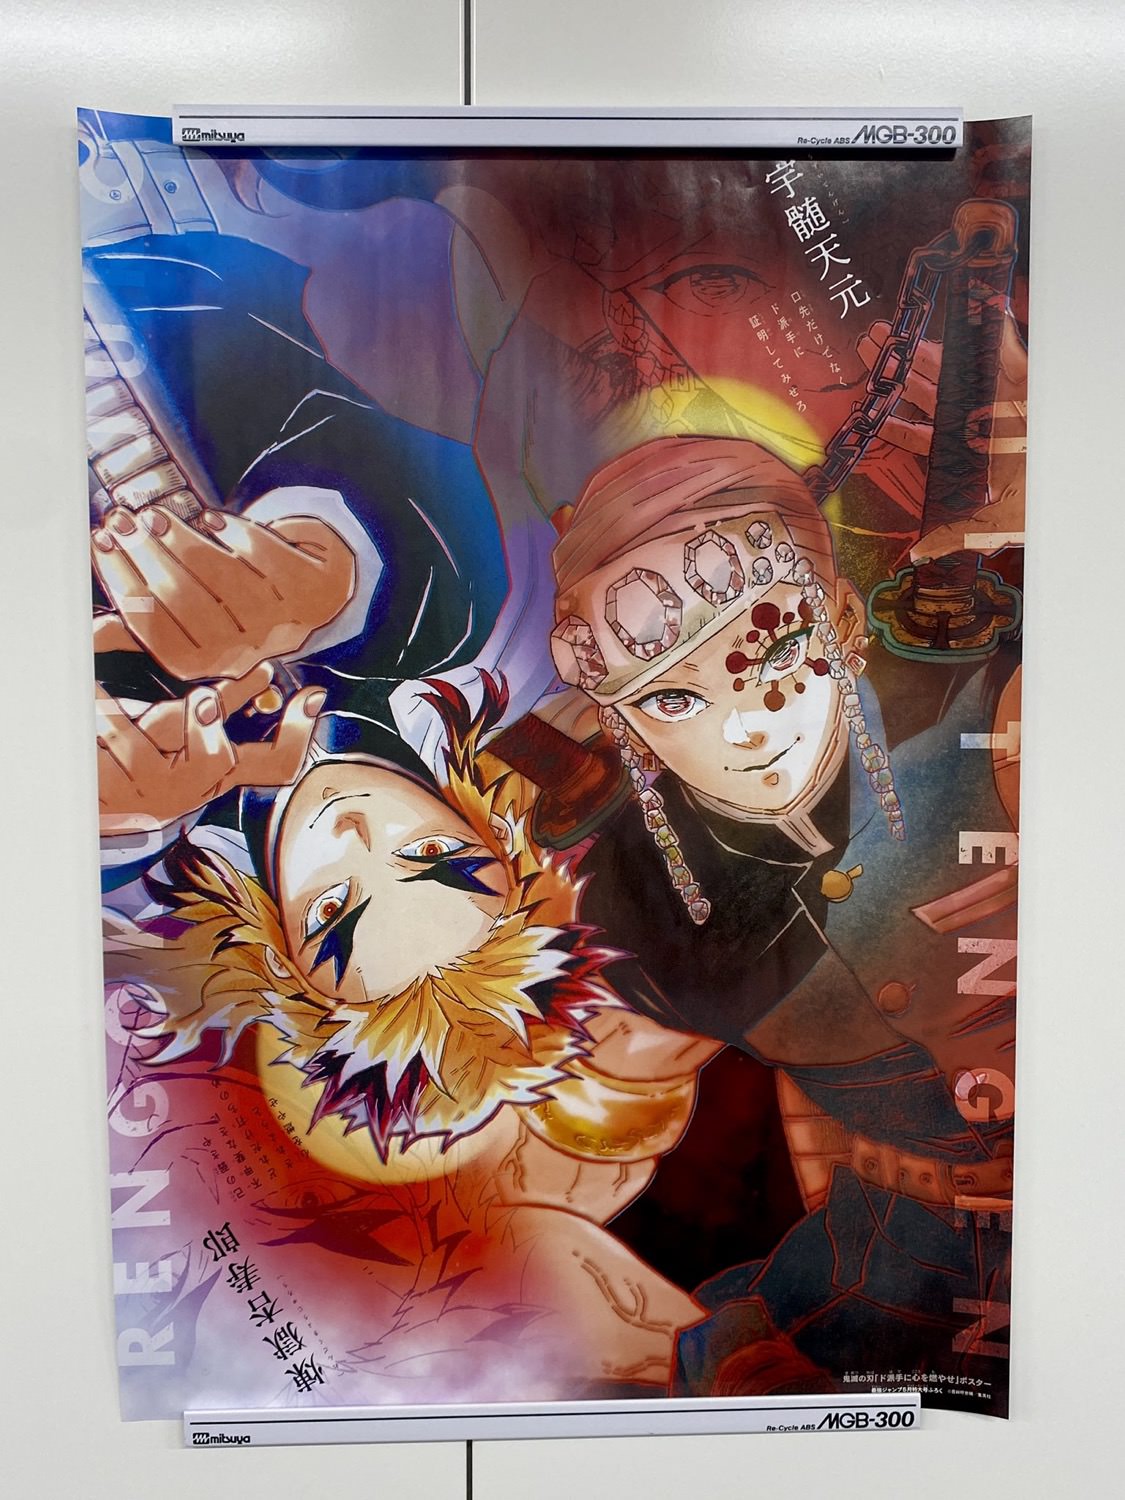 鬼滅の刃 最強ジャンプ5月号は煉獄杏寿郎と宇髄天元のポスター付録付き!